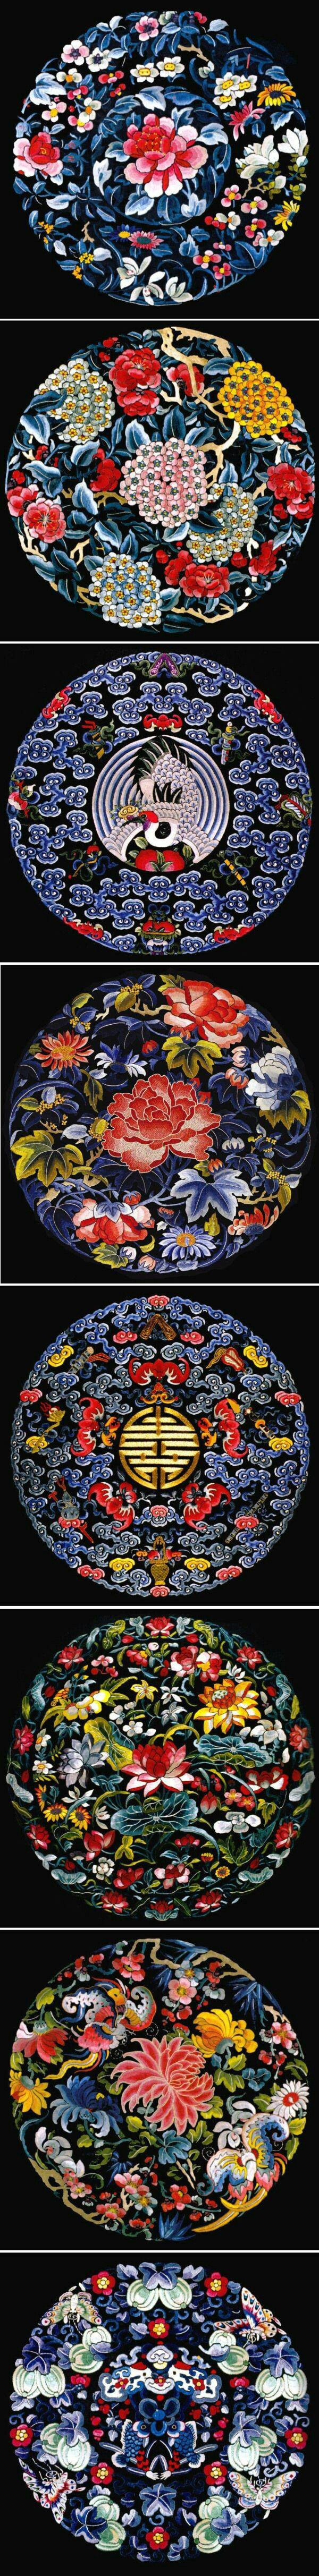 中国传统纹样图案设计欣赏